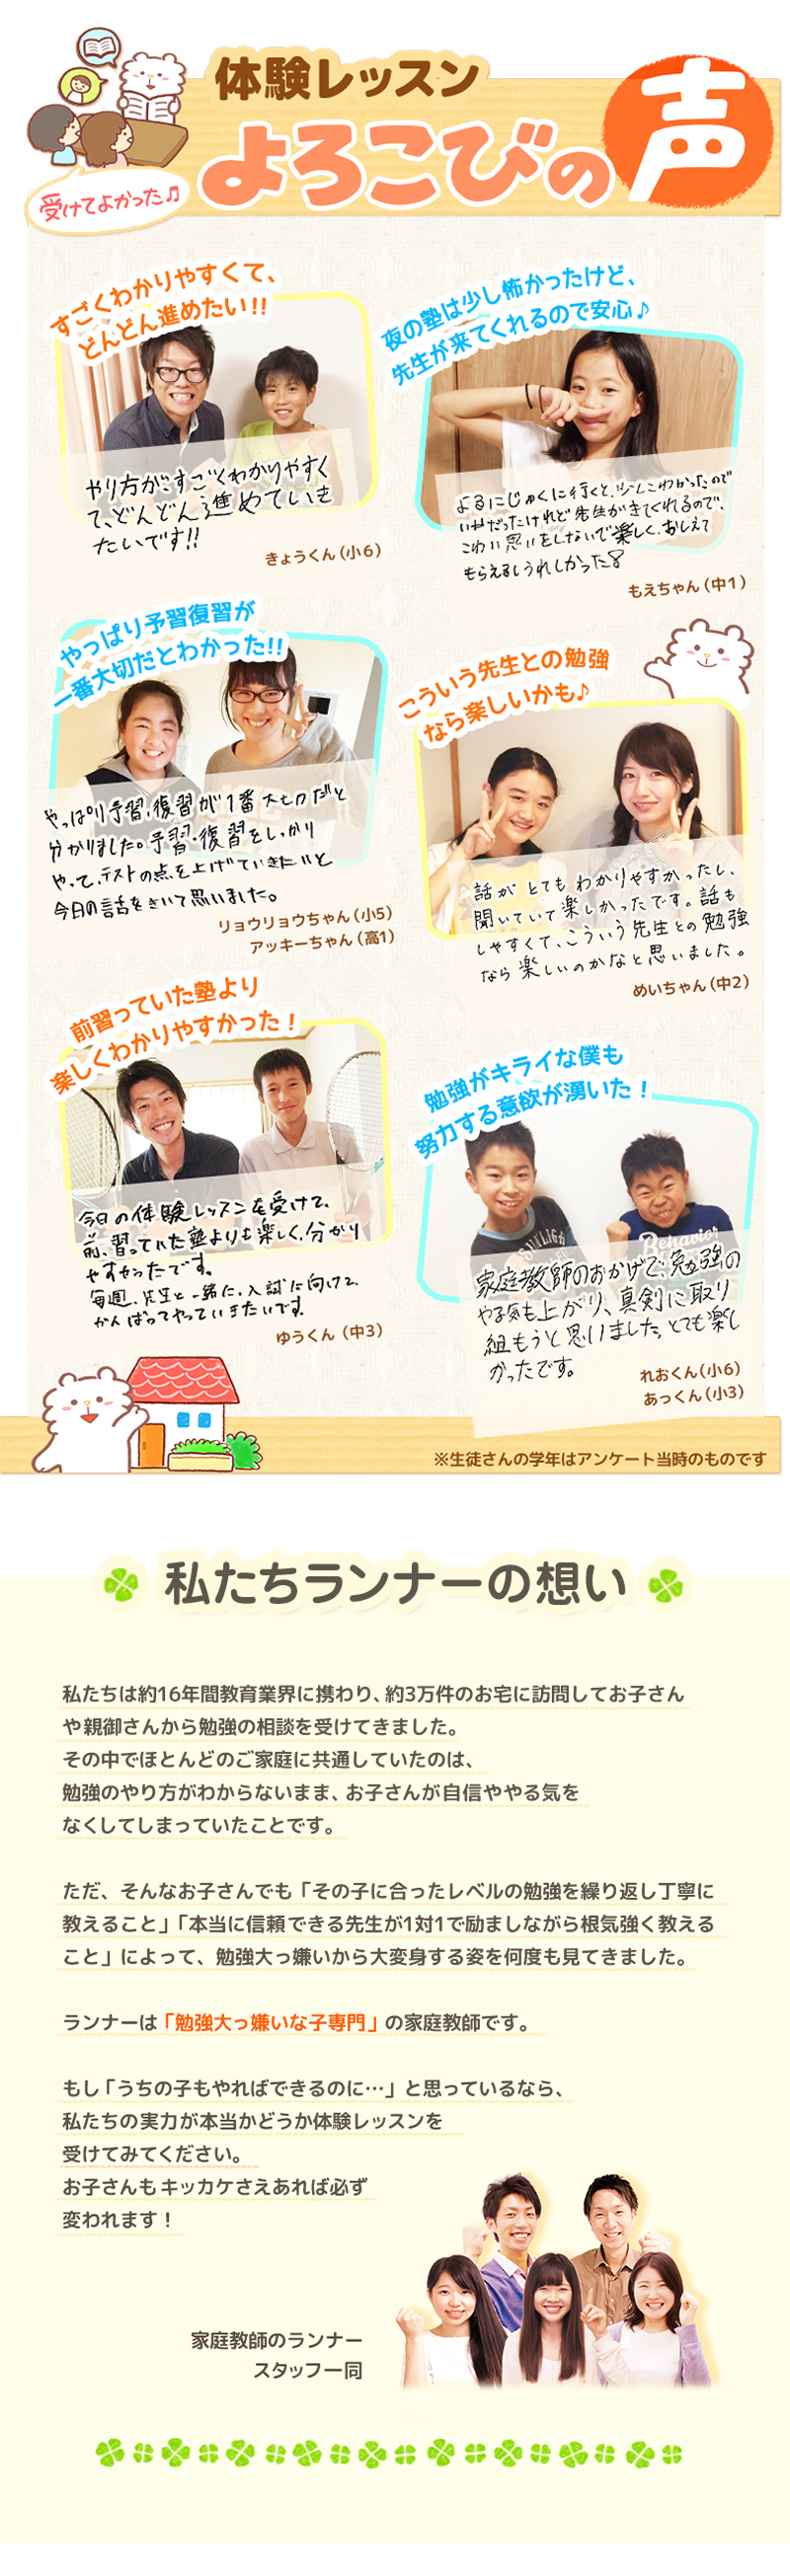 【家庭教師-栃木県-茂木町のお客様のページ】【画像が表示されない場合はページ下部に画像と同じ内容をテキストで掲載していますのでそちらをご覧ください。】